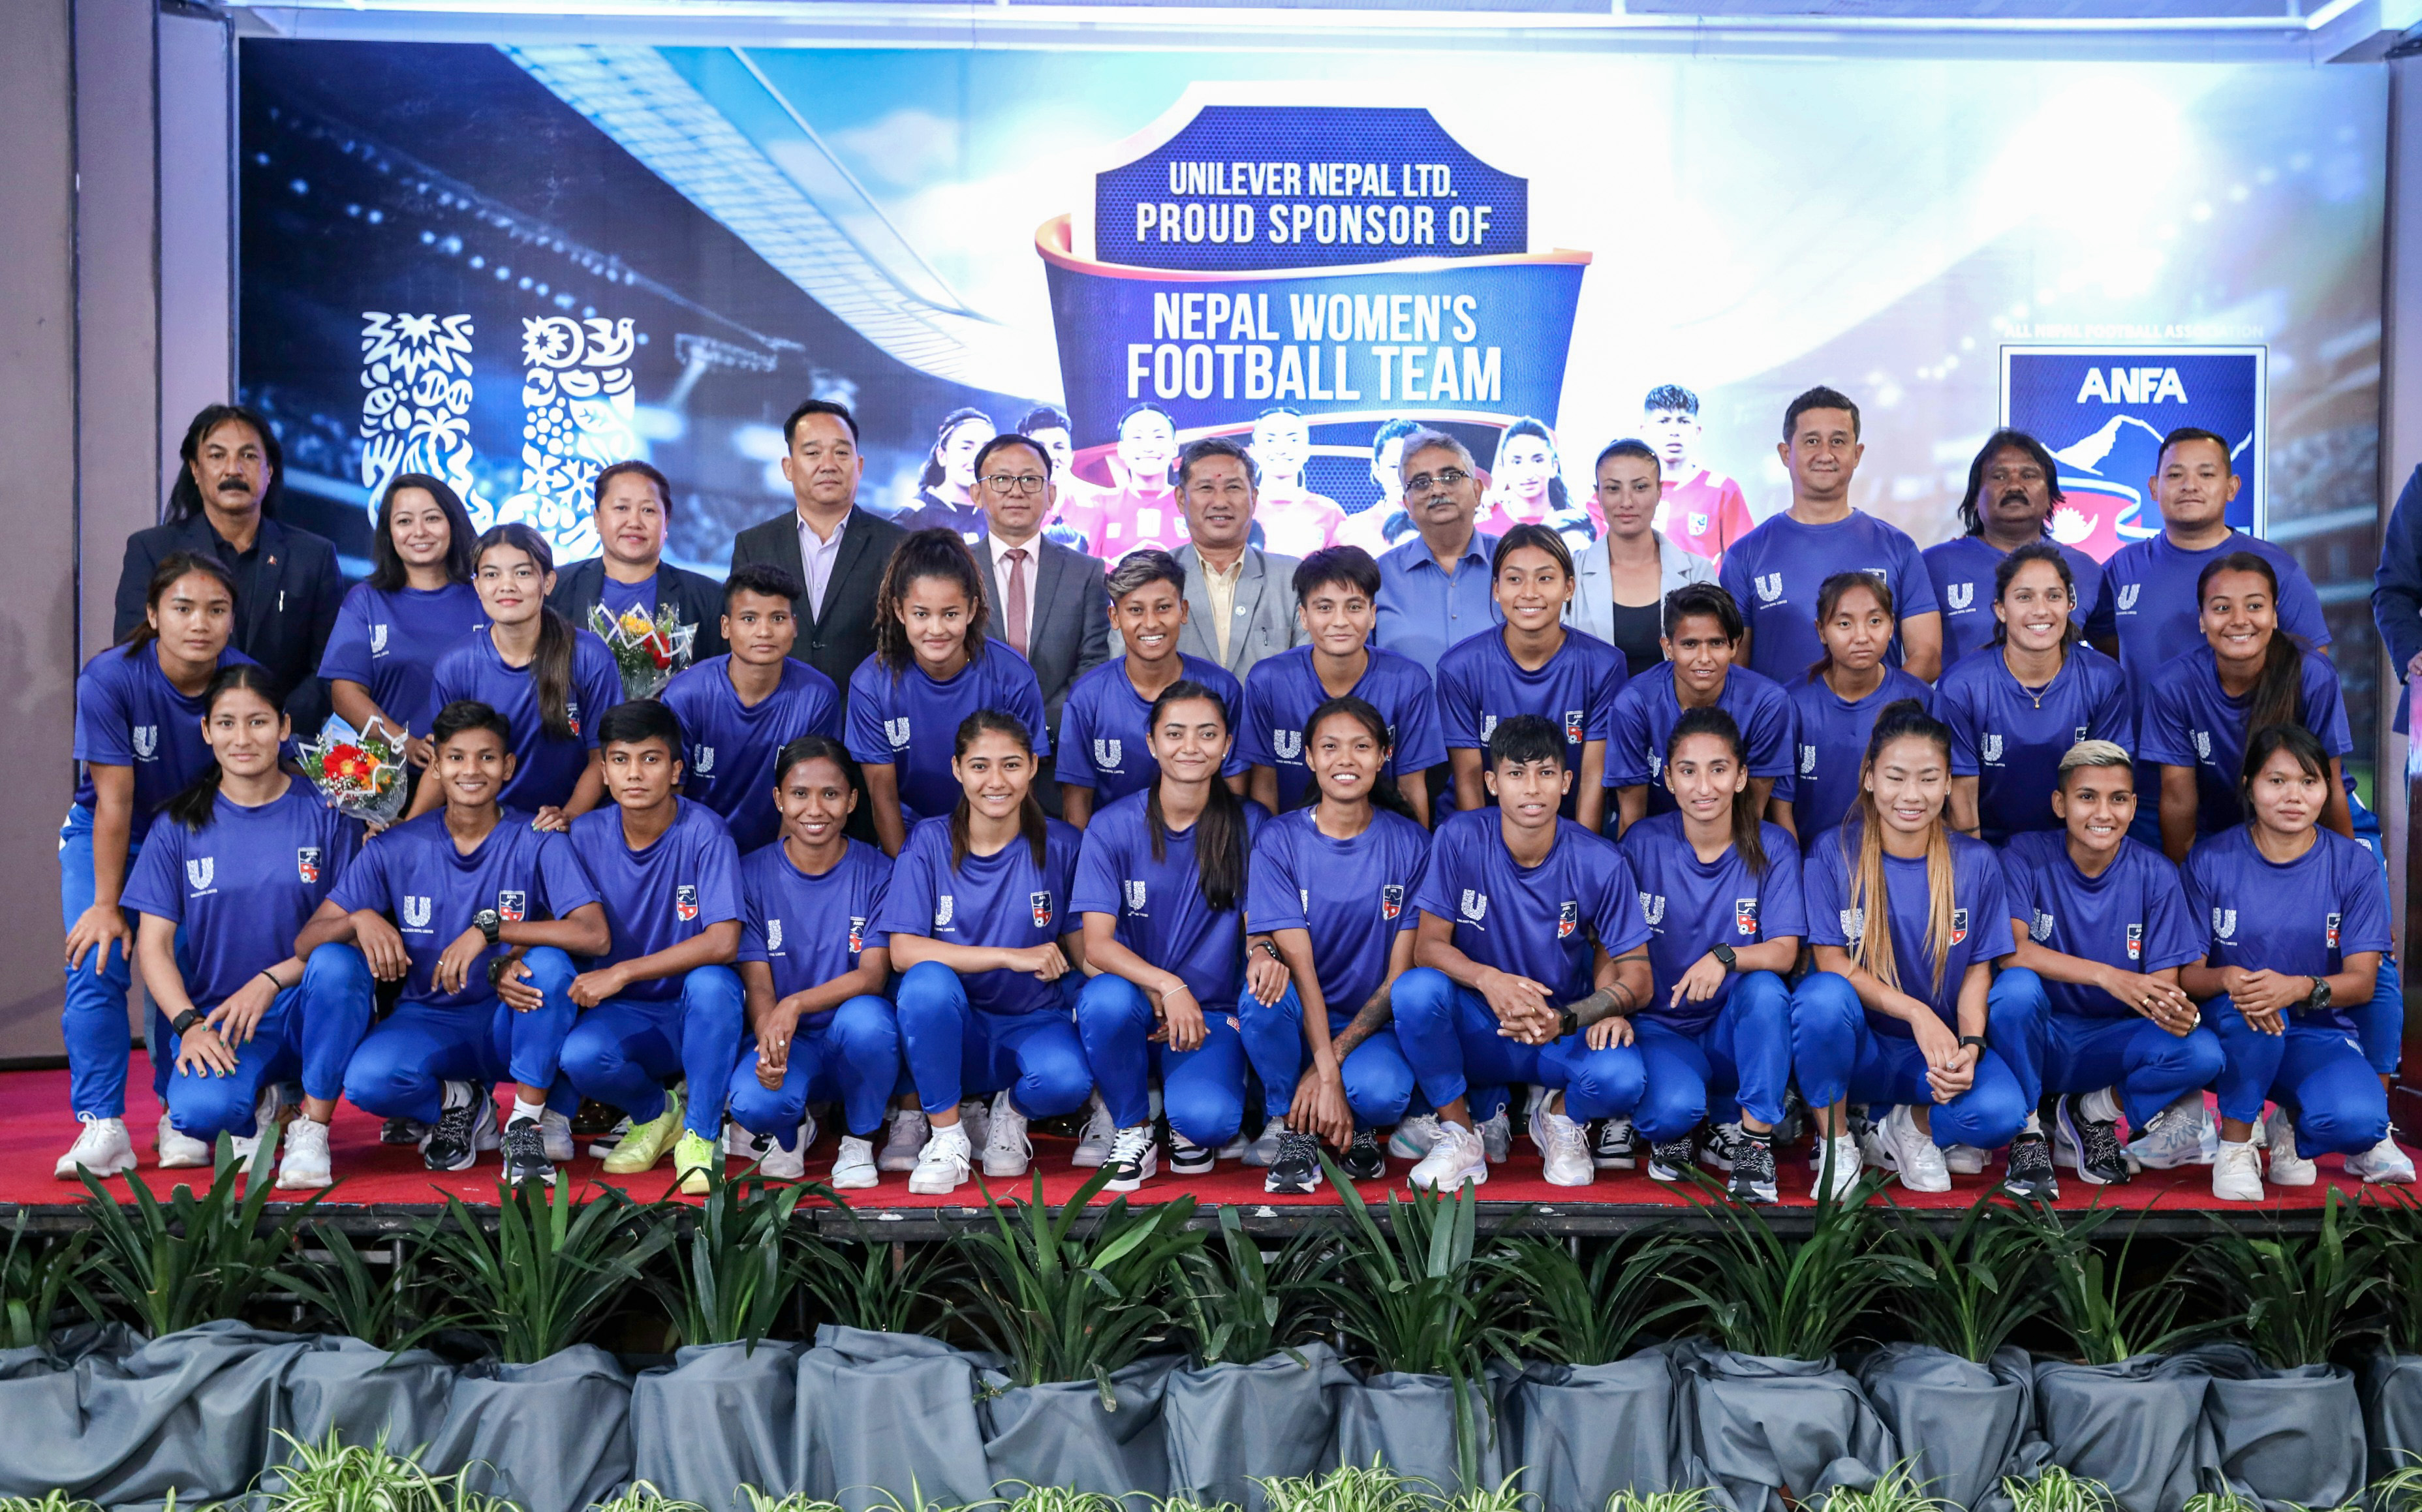 राष्ट्रिय महिला फुटबल टिमको आधिकारिक प्रायोजक युनिलिभर